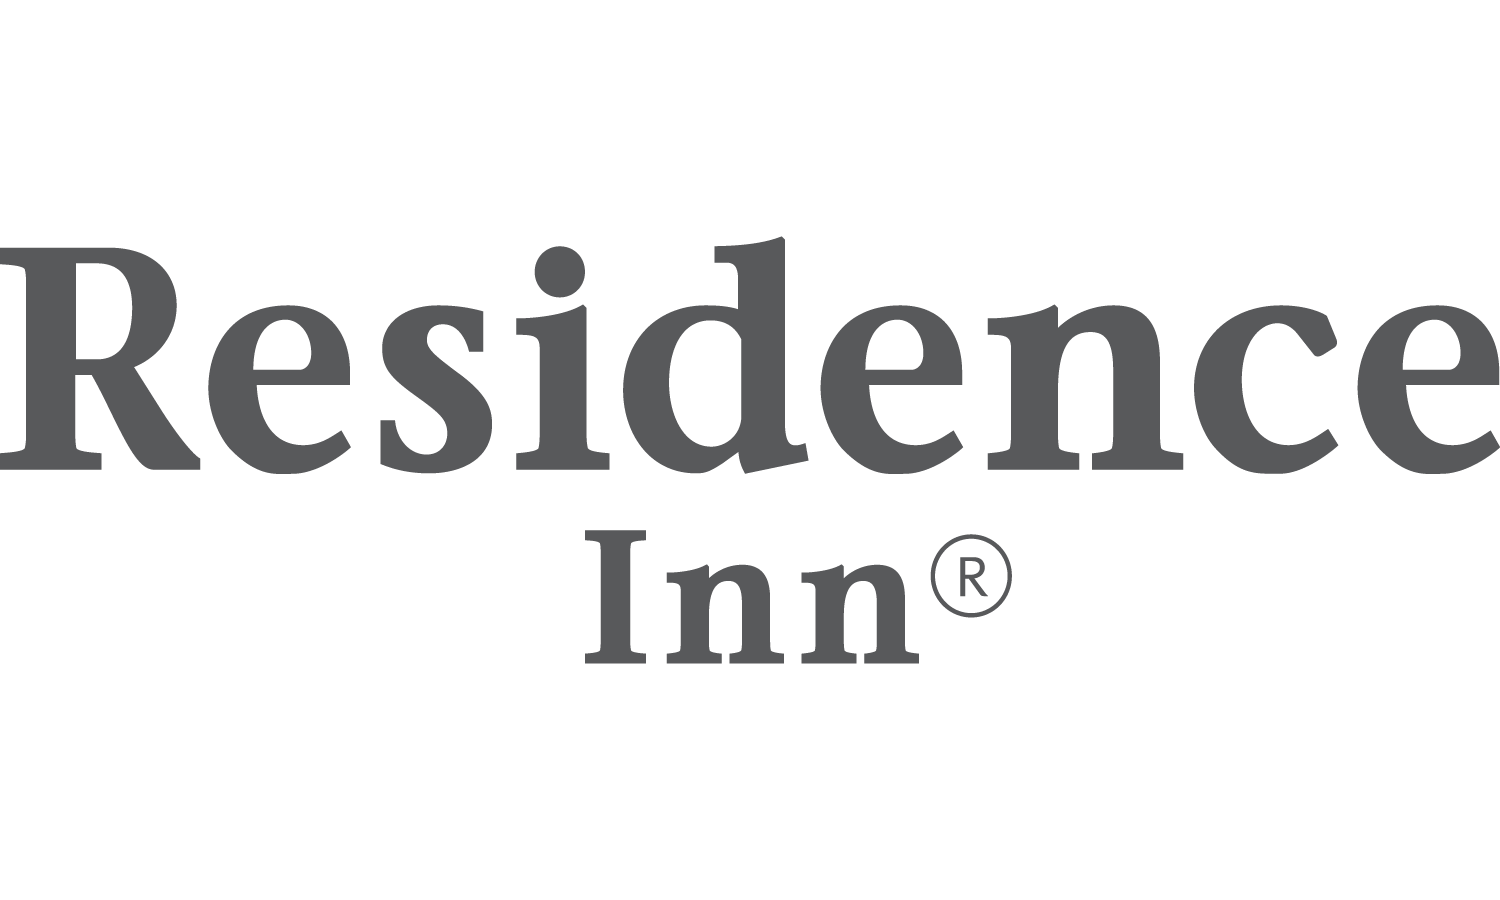 Residence Inn Logo - Residence Inn by Marriott